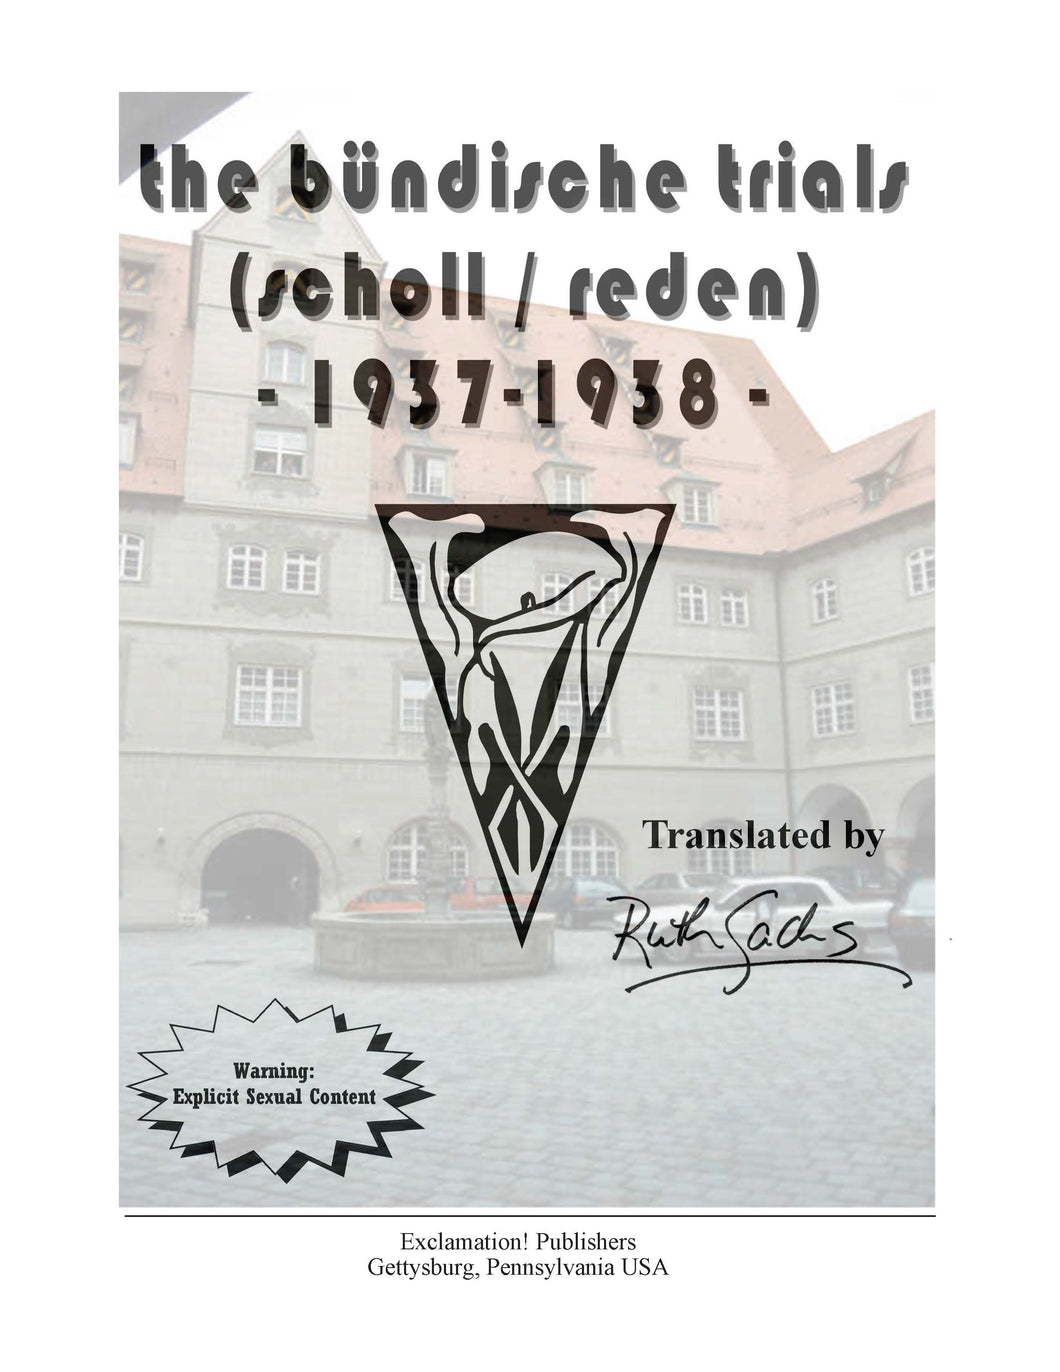 the bündische trials: scholl-reden. 1937-1938.